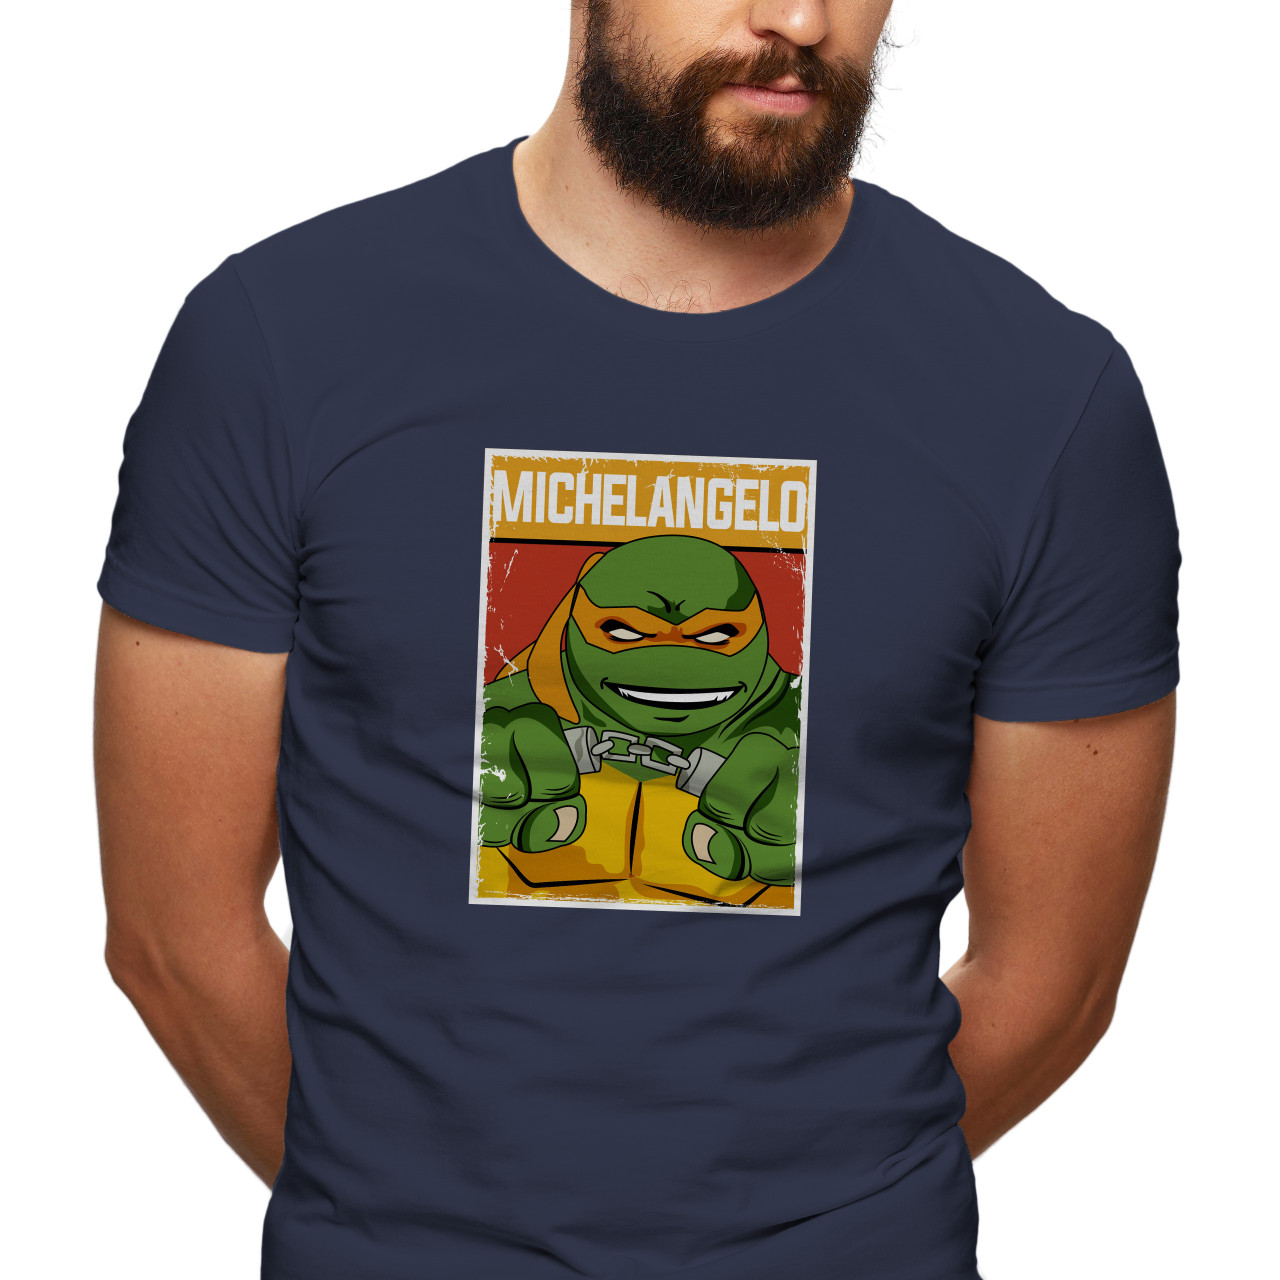 Pánské tričko s potiskem “Michelangelo"